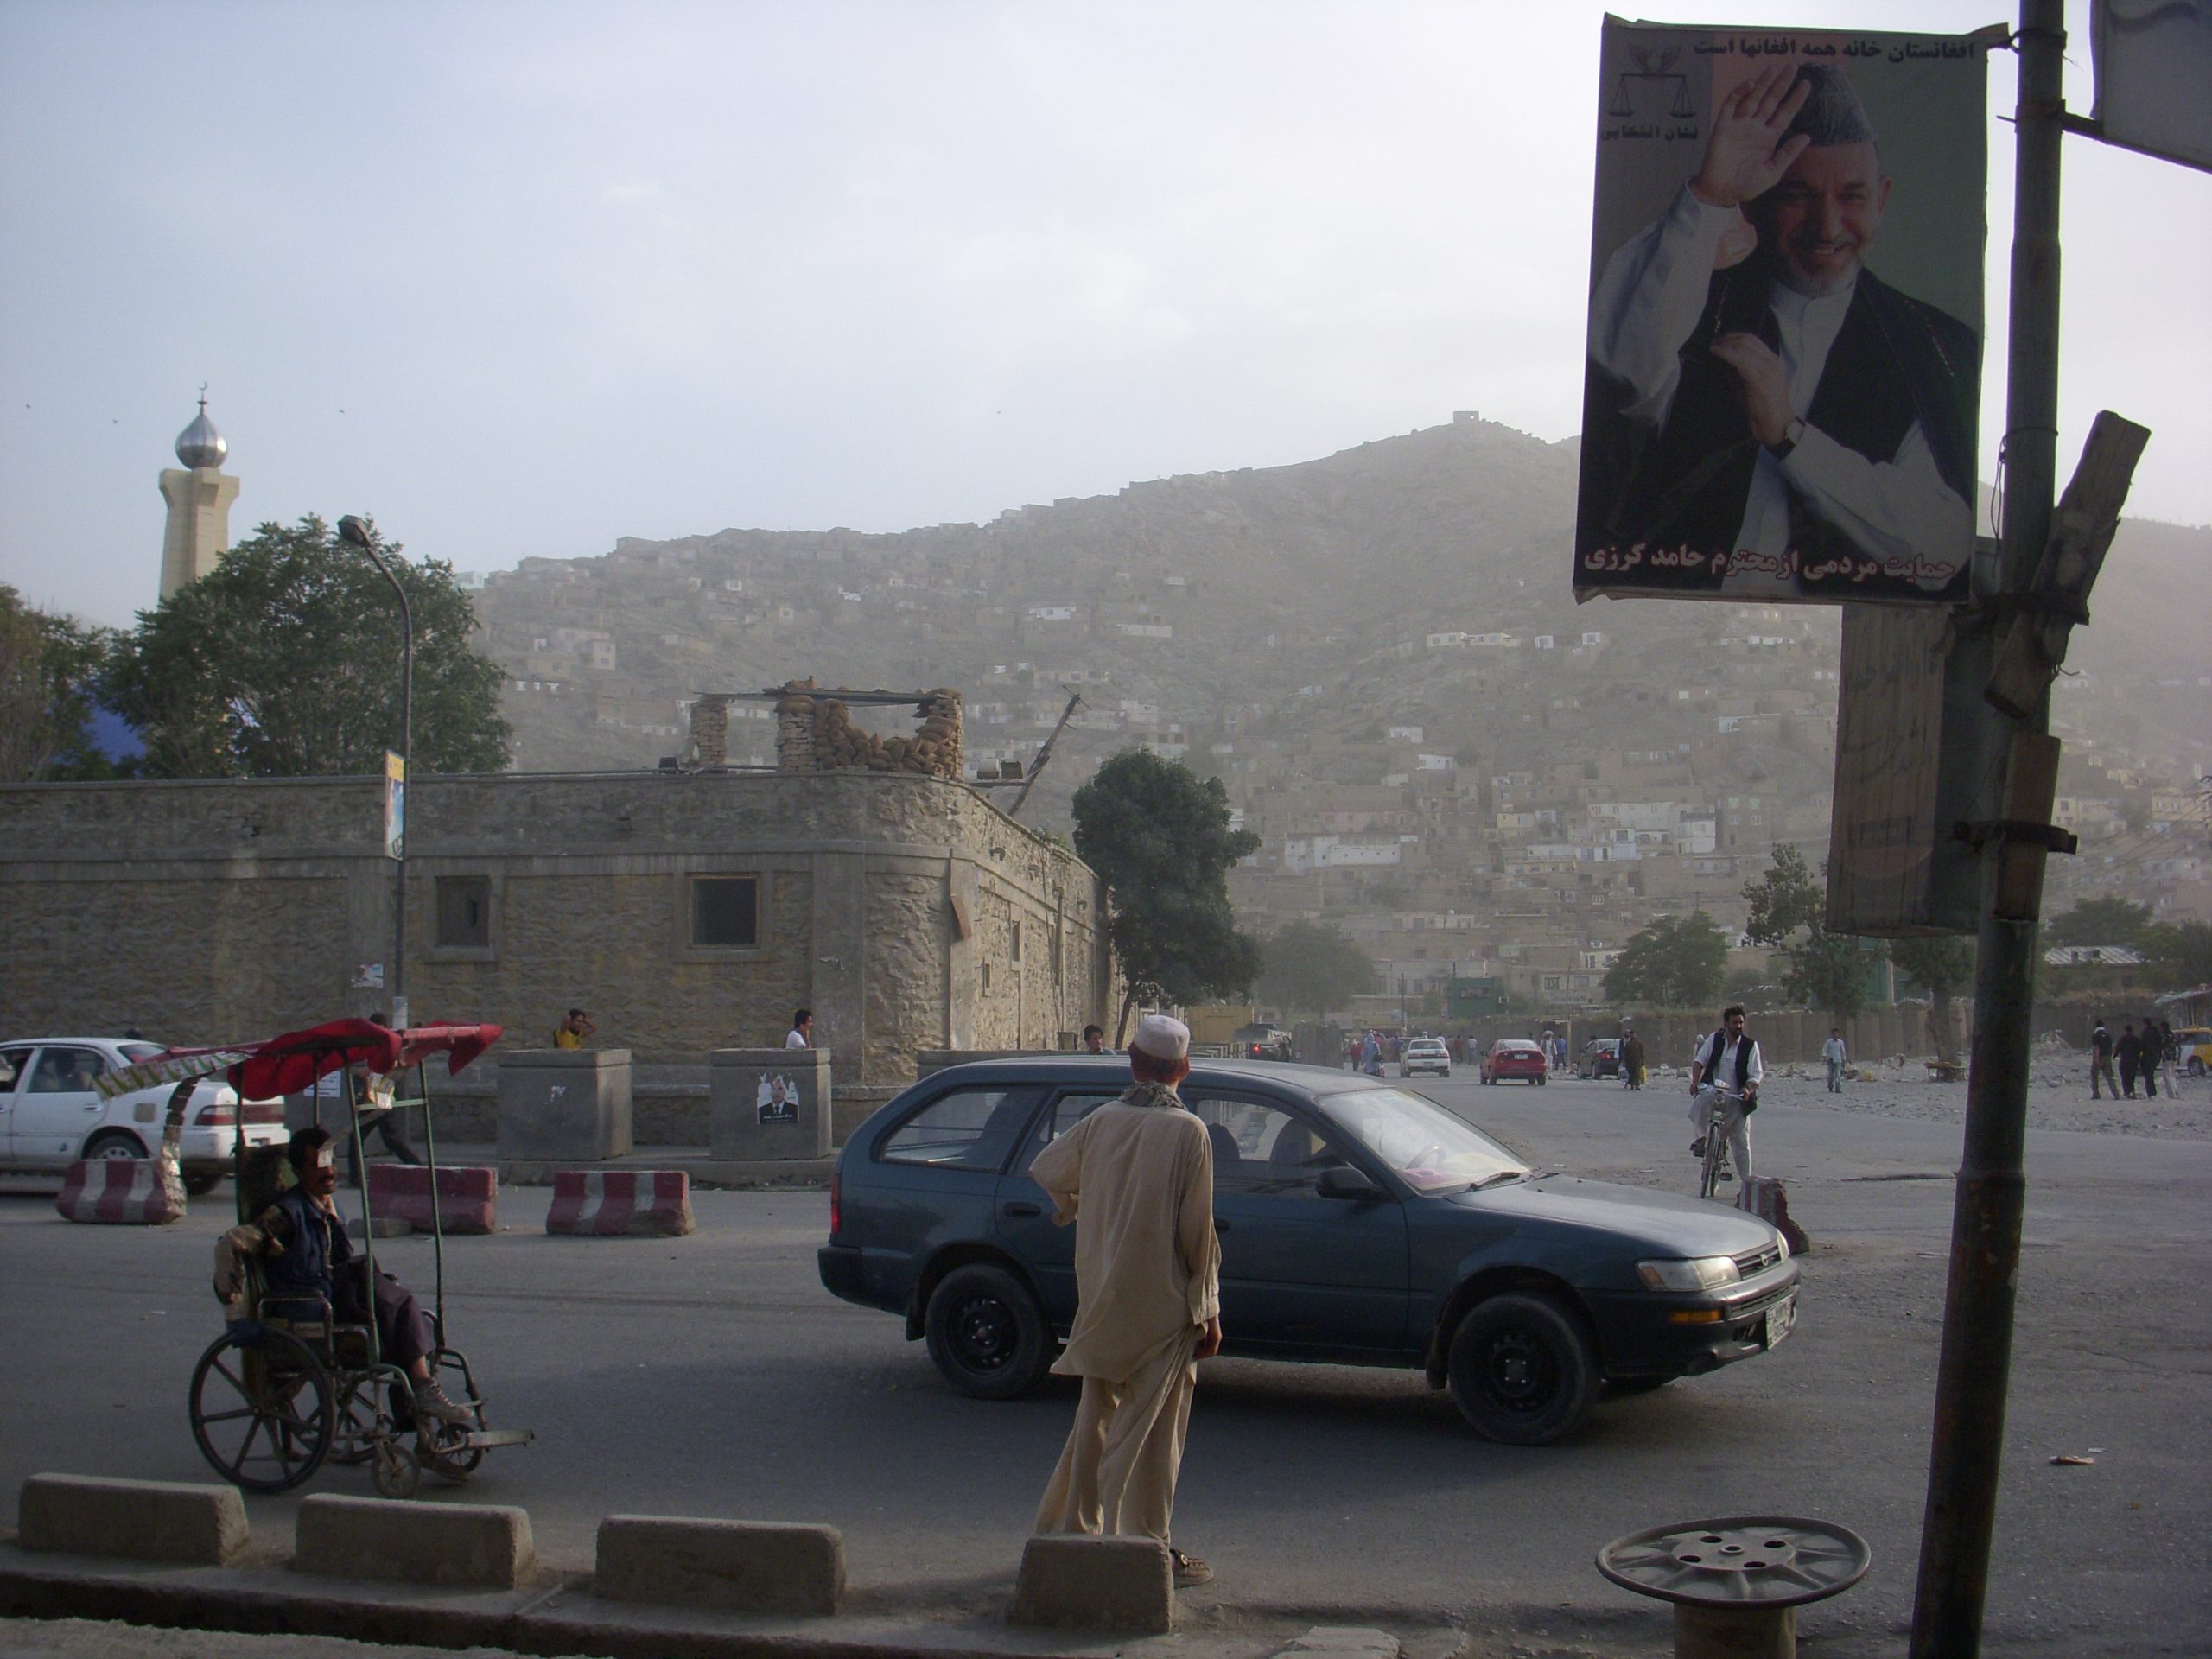 Veterano de guerra em cadeira de rodas improvisada em Cabul: em 2009, Afeganistão já marcado por pobreza, corrupção e reflexos da guerra (Foto: Florência Costa - Agosto/2009)